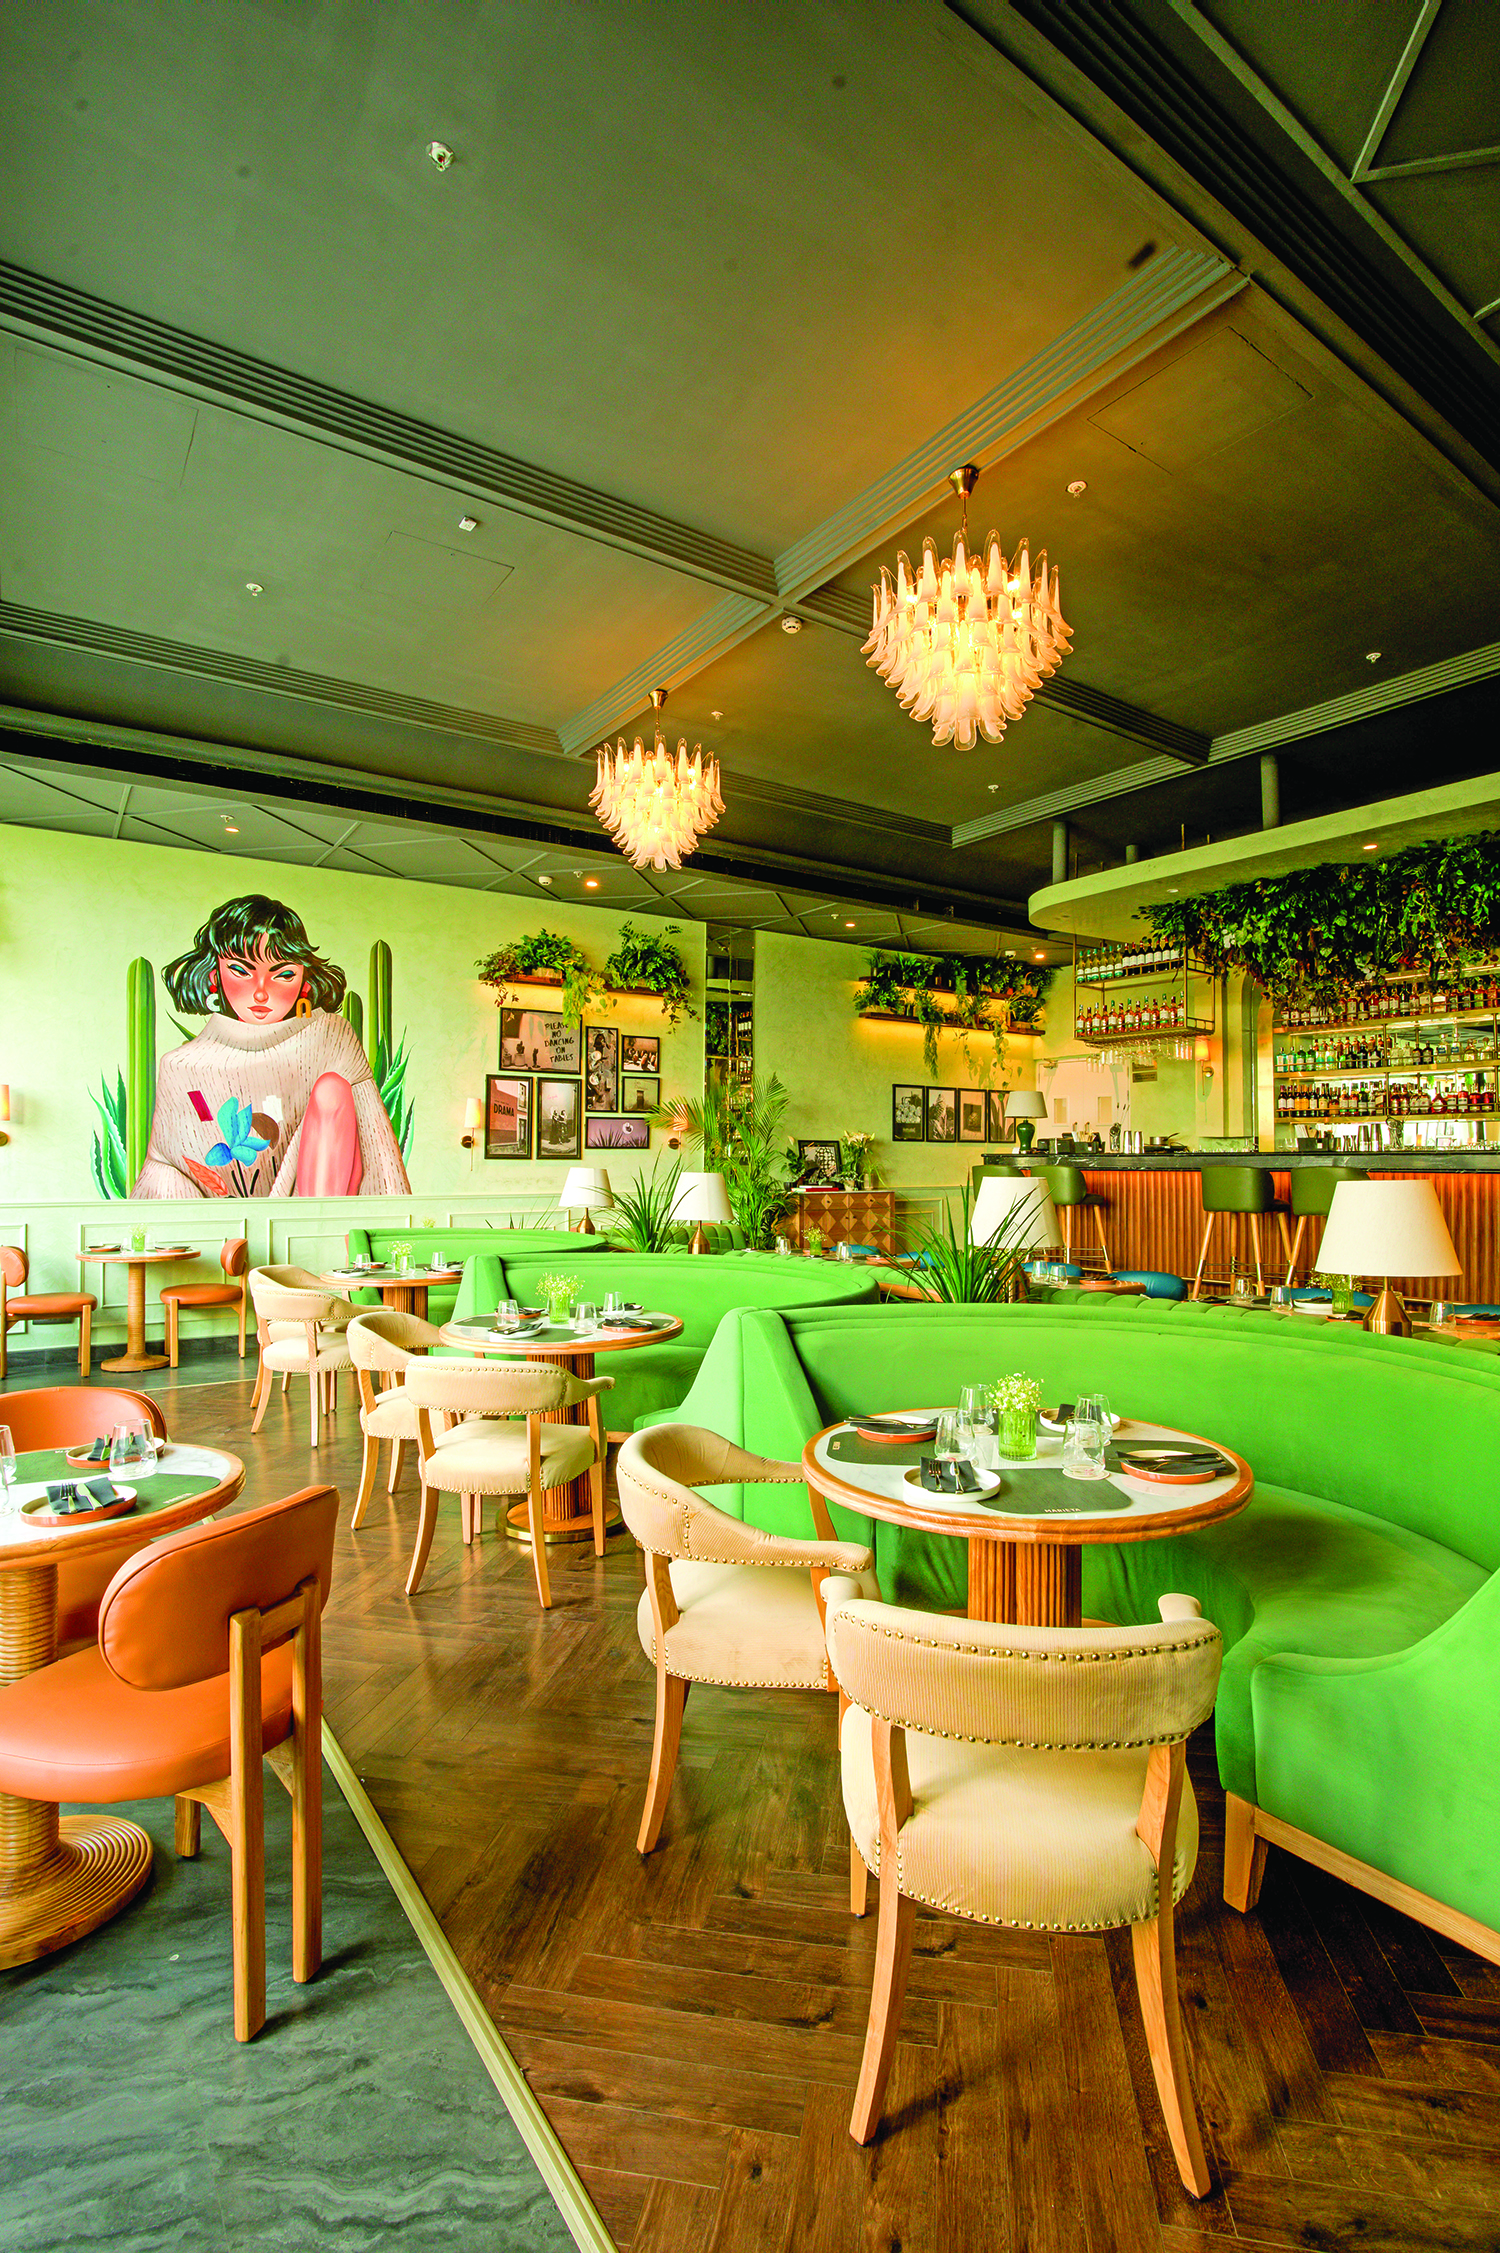 Marièta: A contemporary dining and agave forward cocktail bar